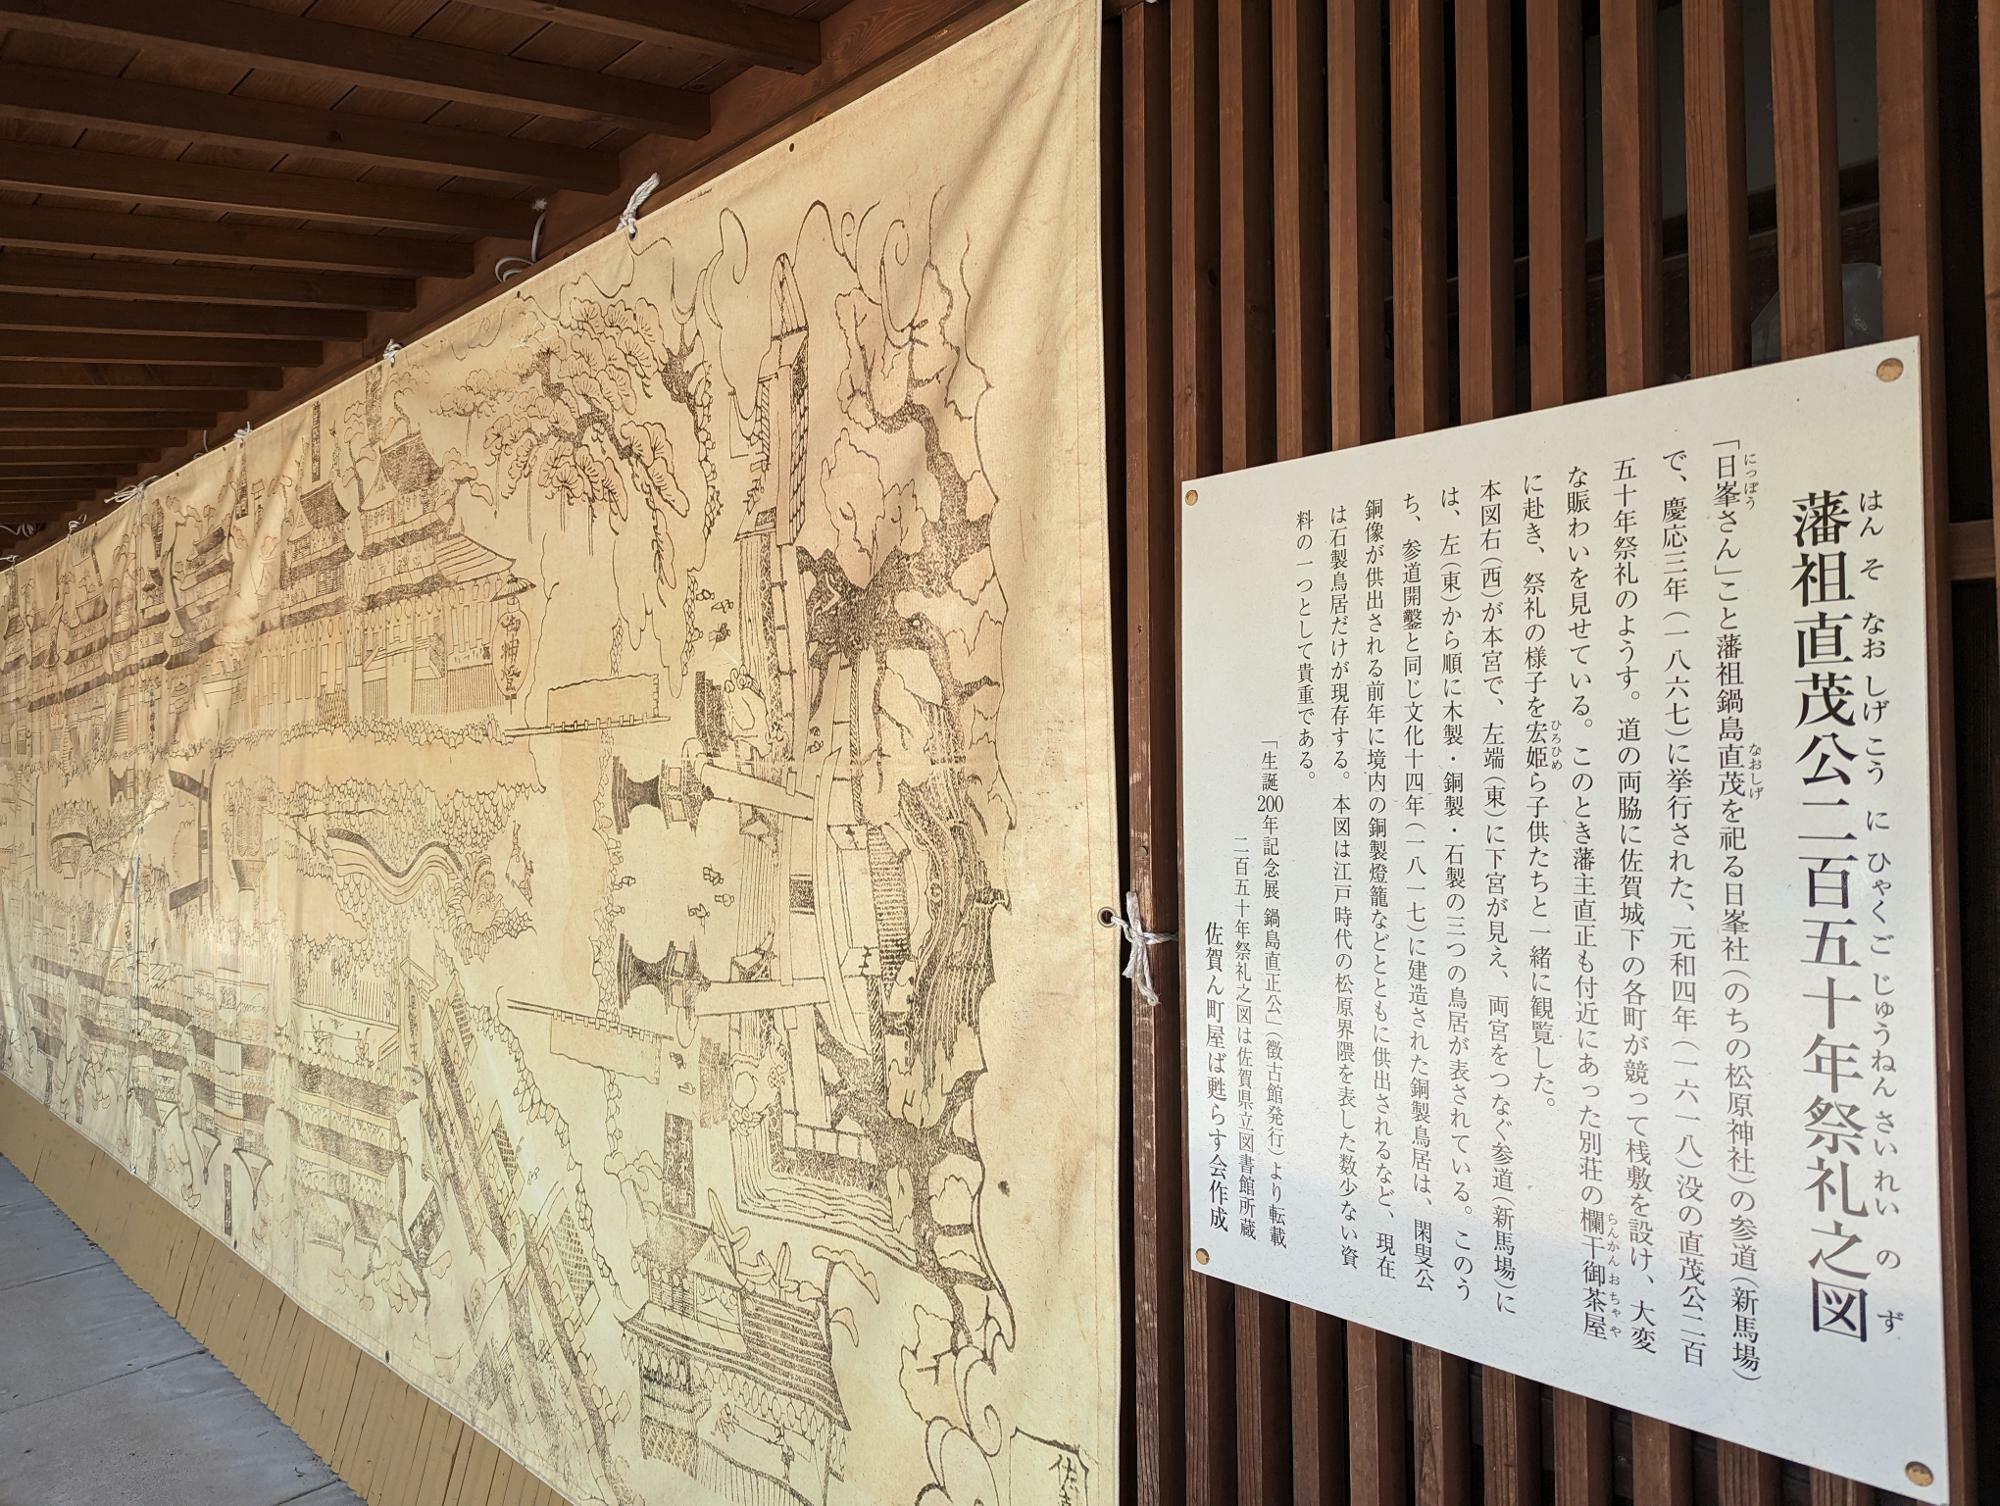 こちらは、藩祖鍋島直茂公二百五十年祭礼之図